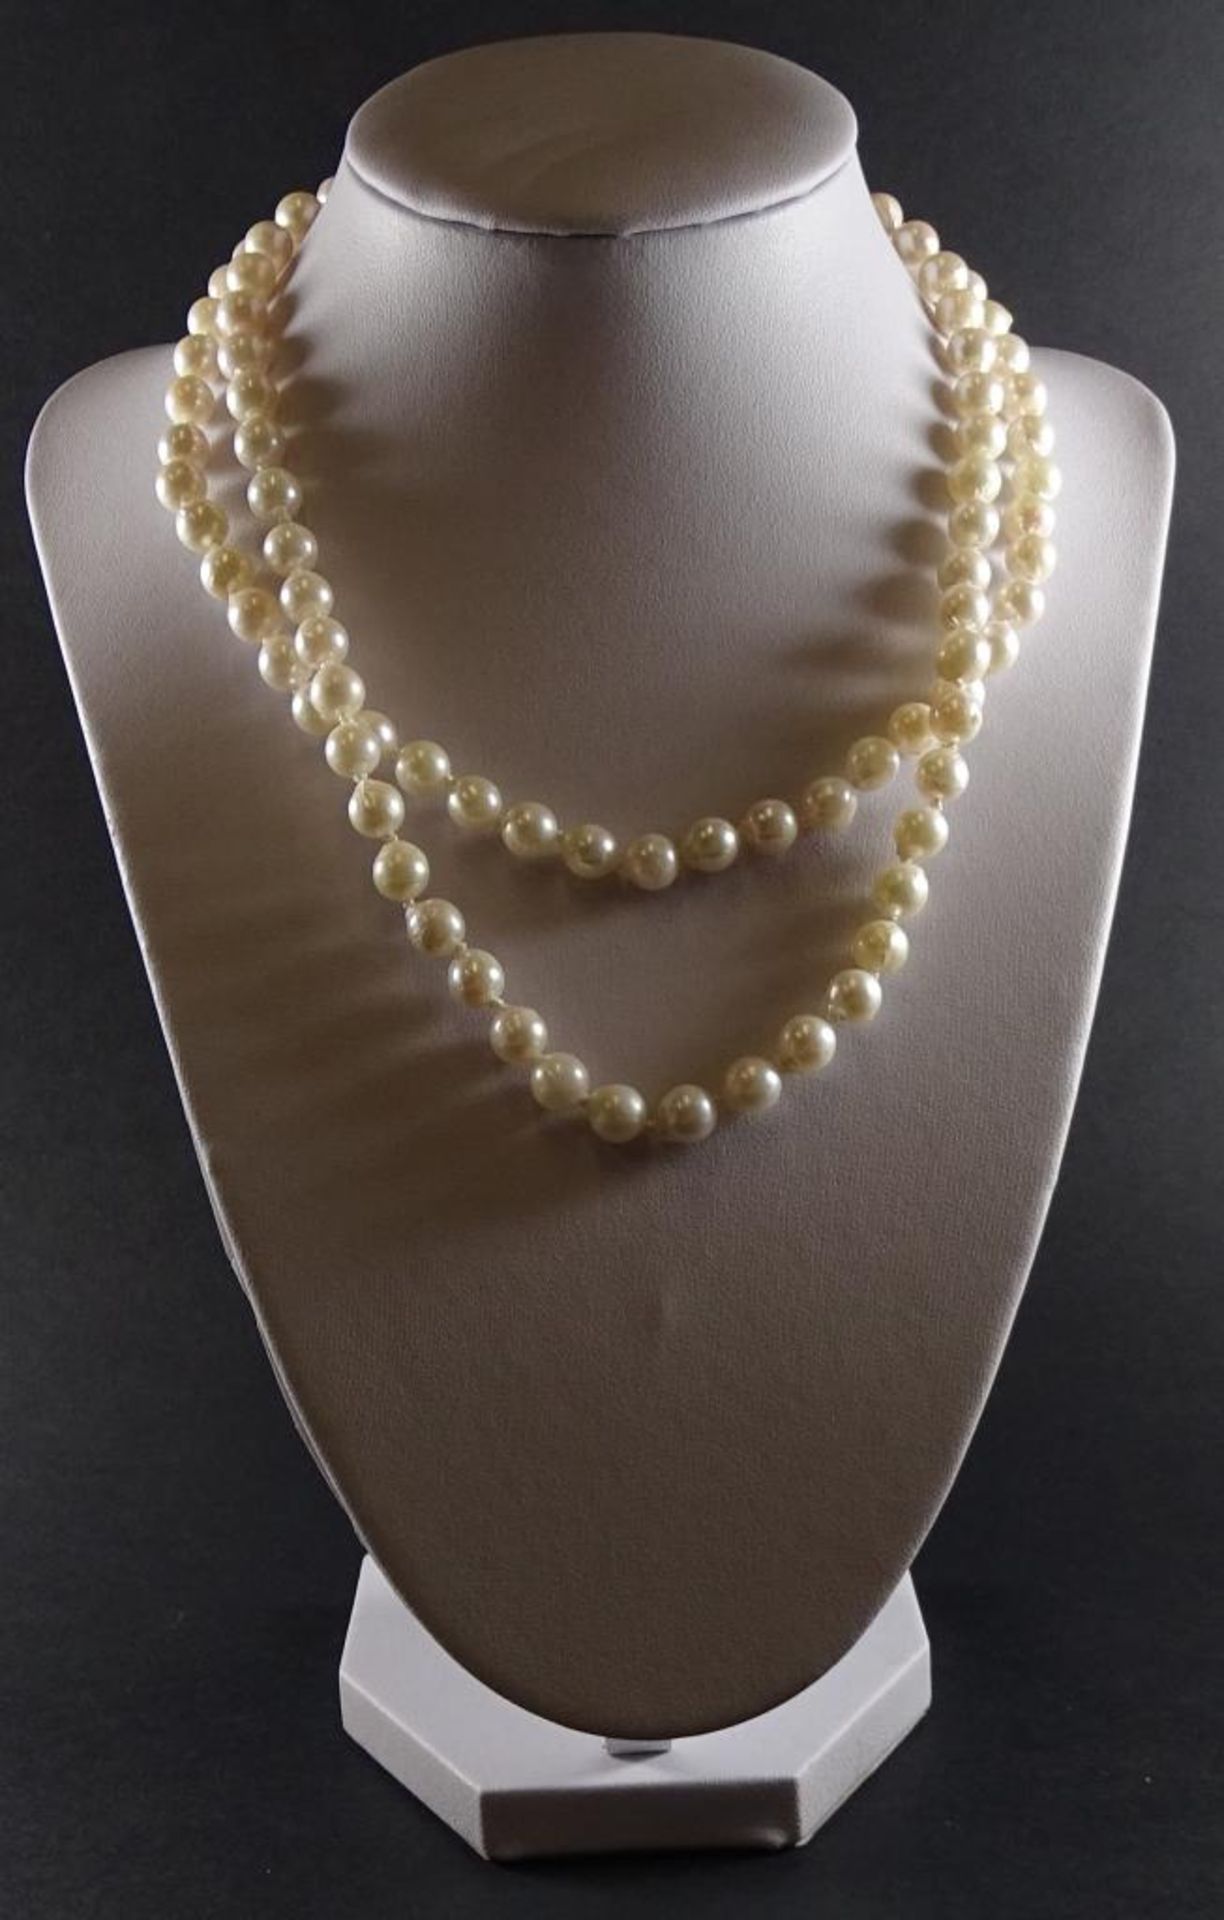 2-Reihige Zuchtperlen Halskette mit Silberschliesse -925-,L-41cm, Perlen d- 6,8-7,4mm,Neu und